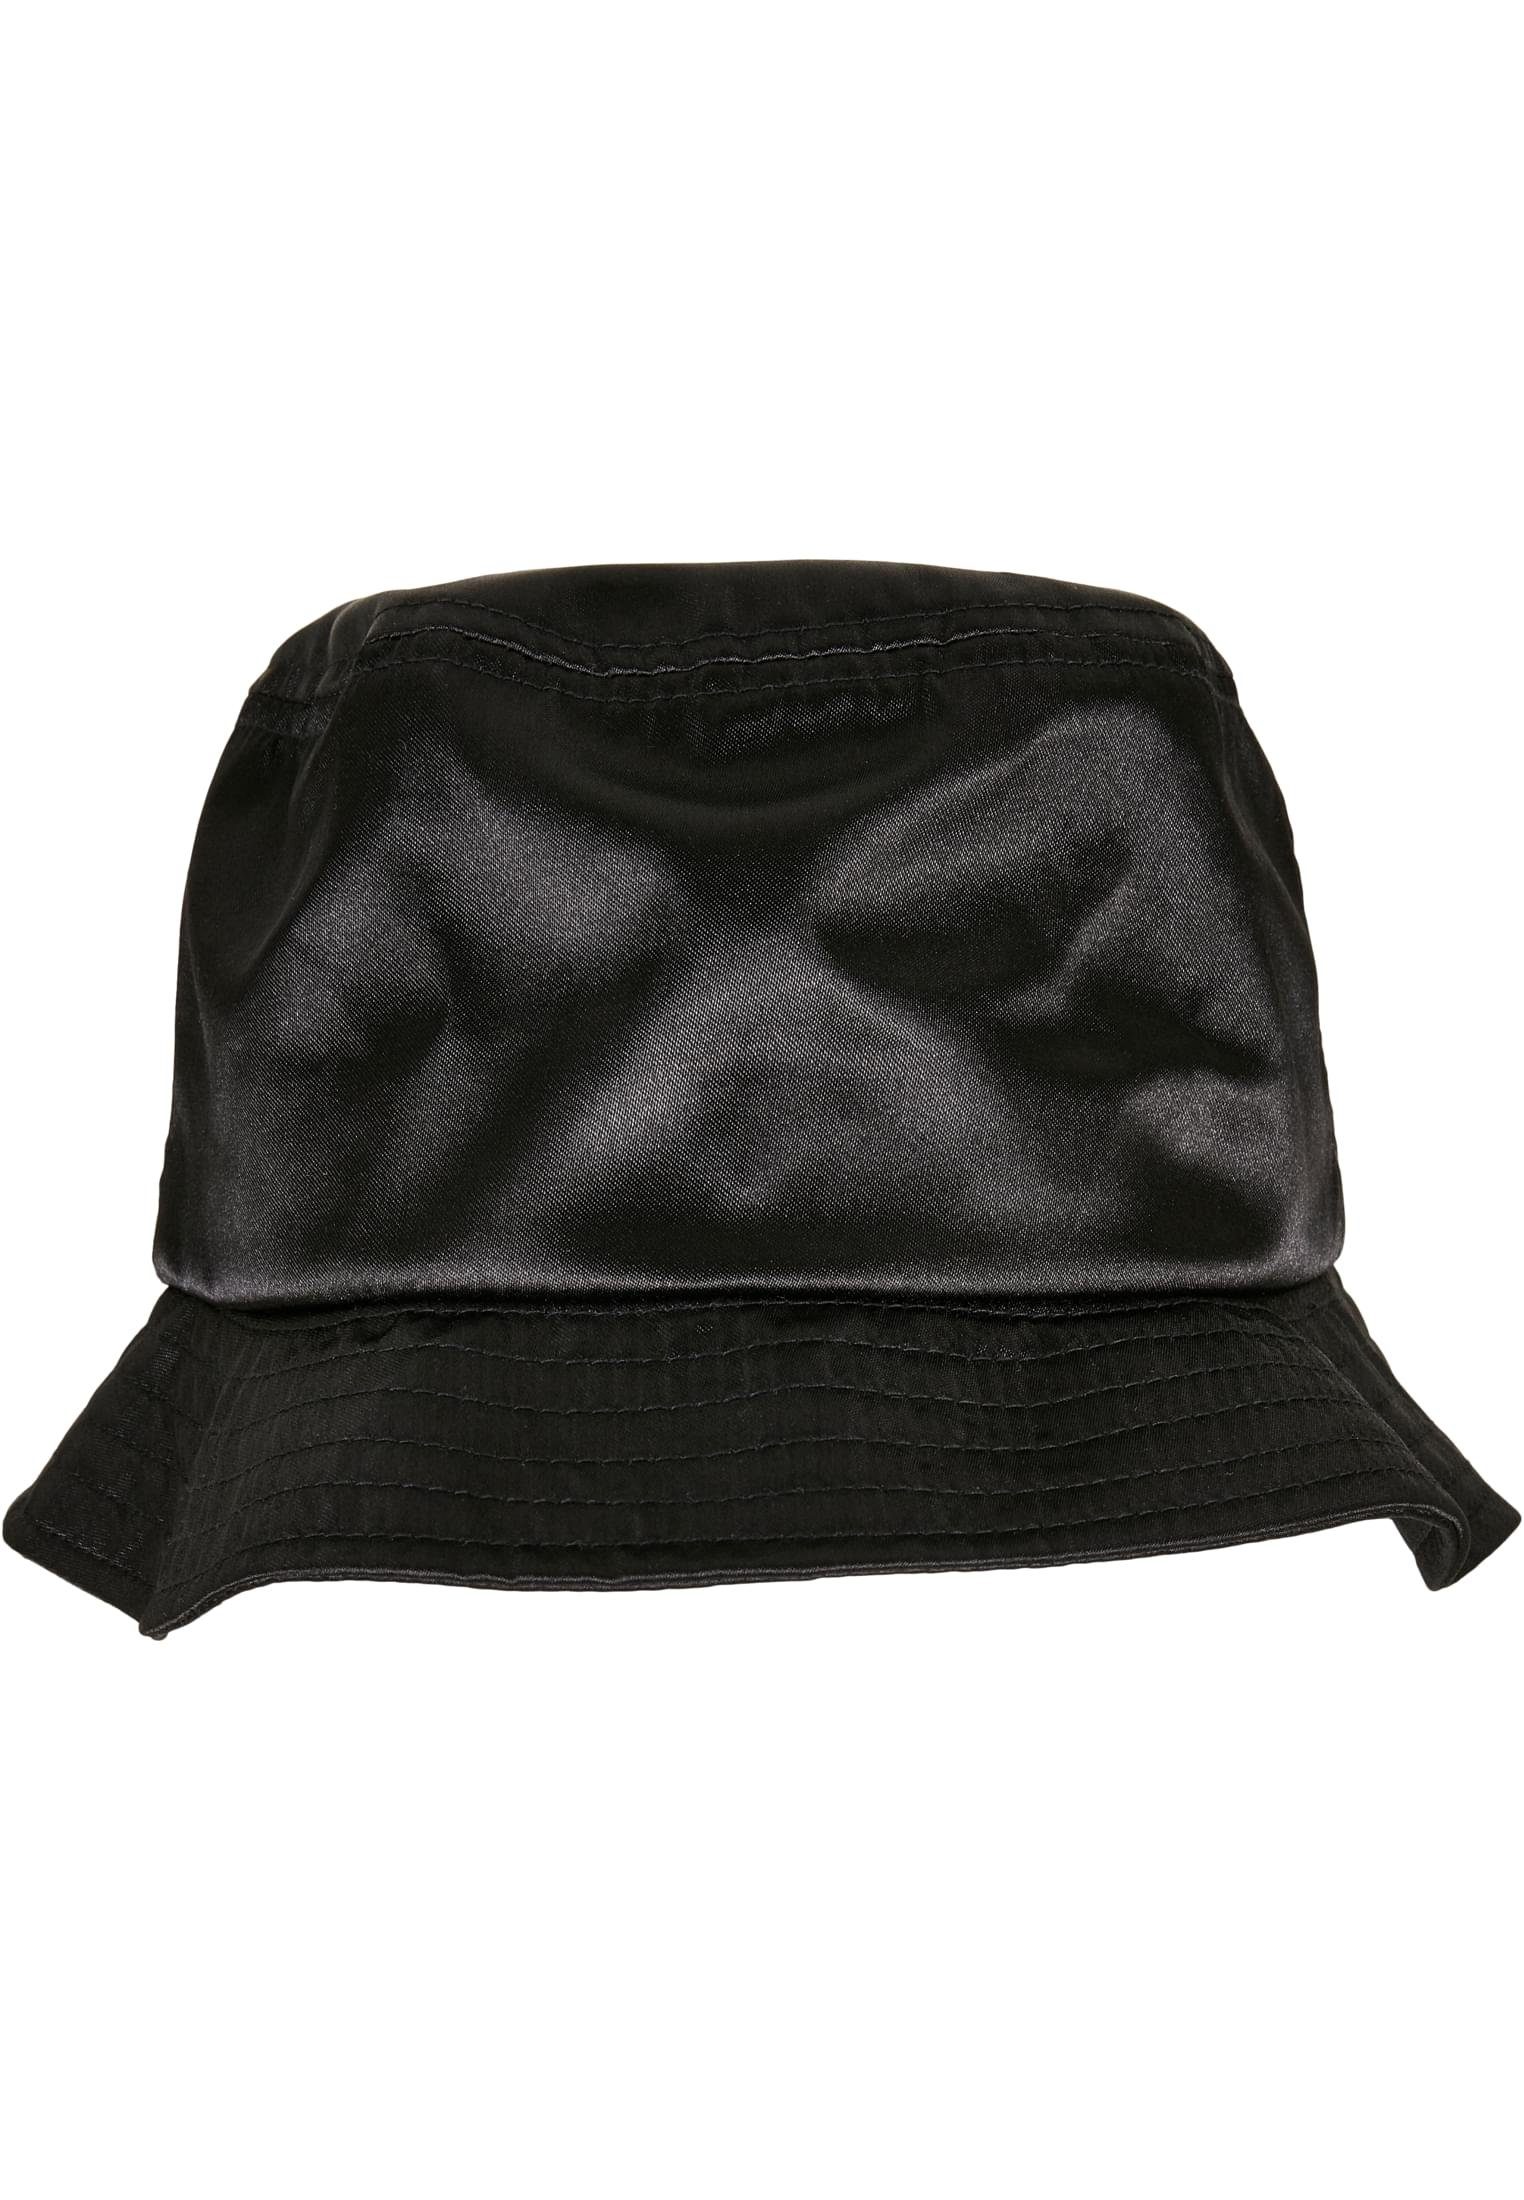 Verkaufen Sie zum niedrigsten Preis! CLASSICS black Hat Bucket Unisex URBAN Satin Trucker Cap